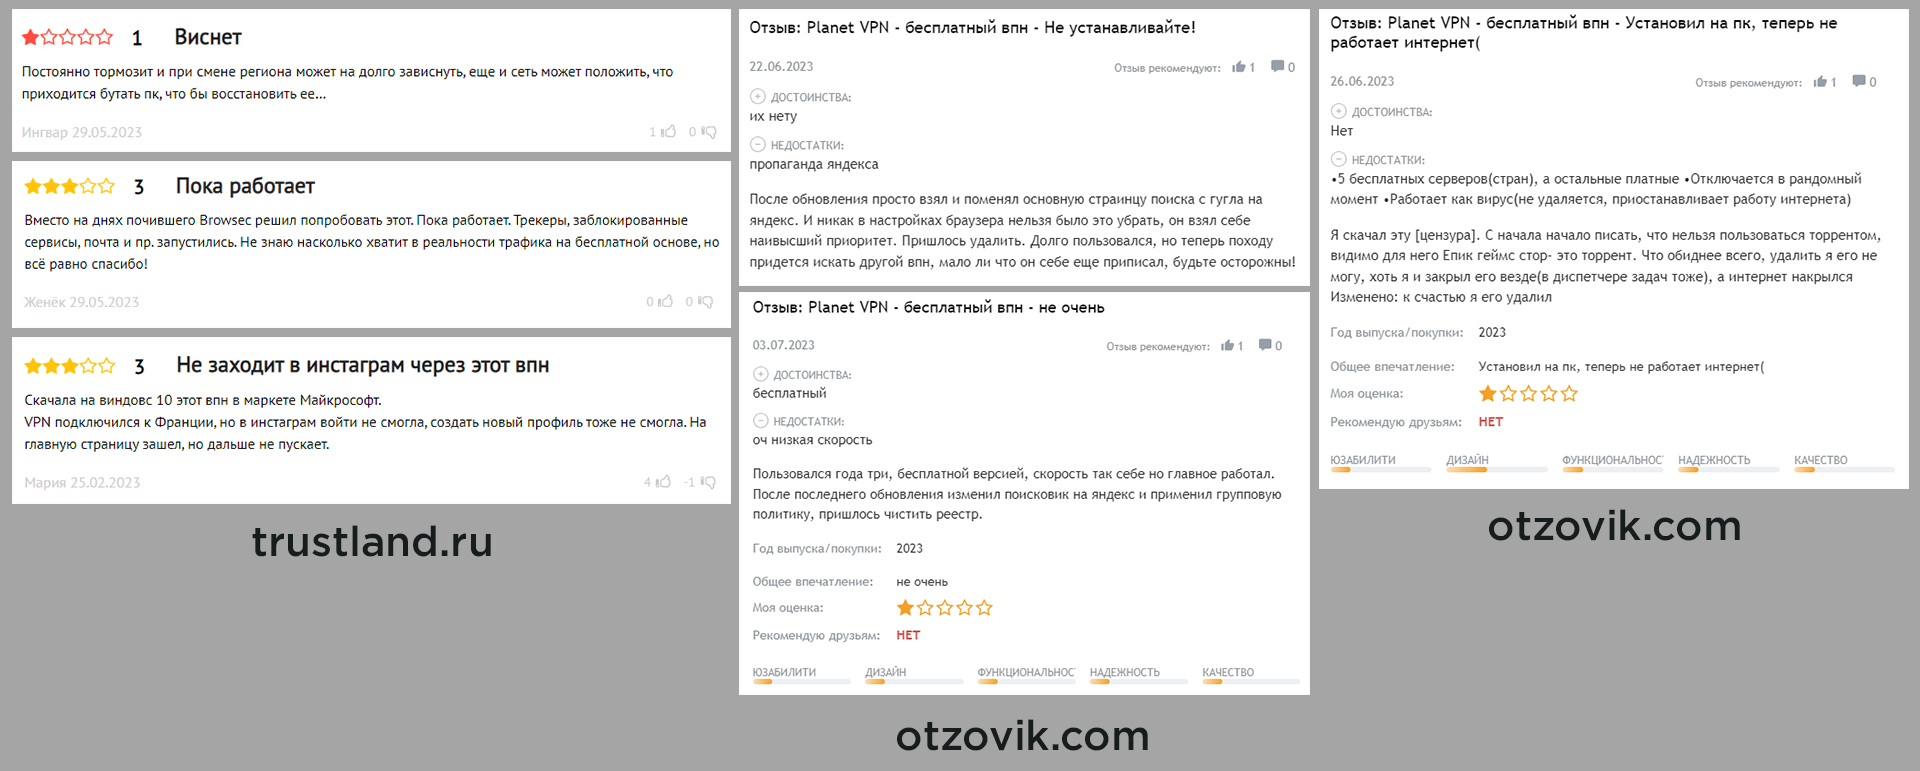 Негативные отзывы о сервисе Planet VPN с сайтов otzovik.com и trustland.ru.